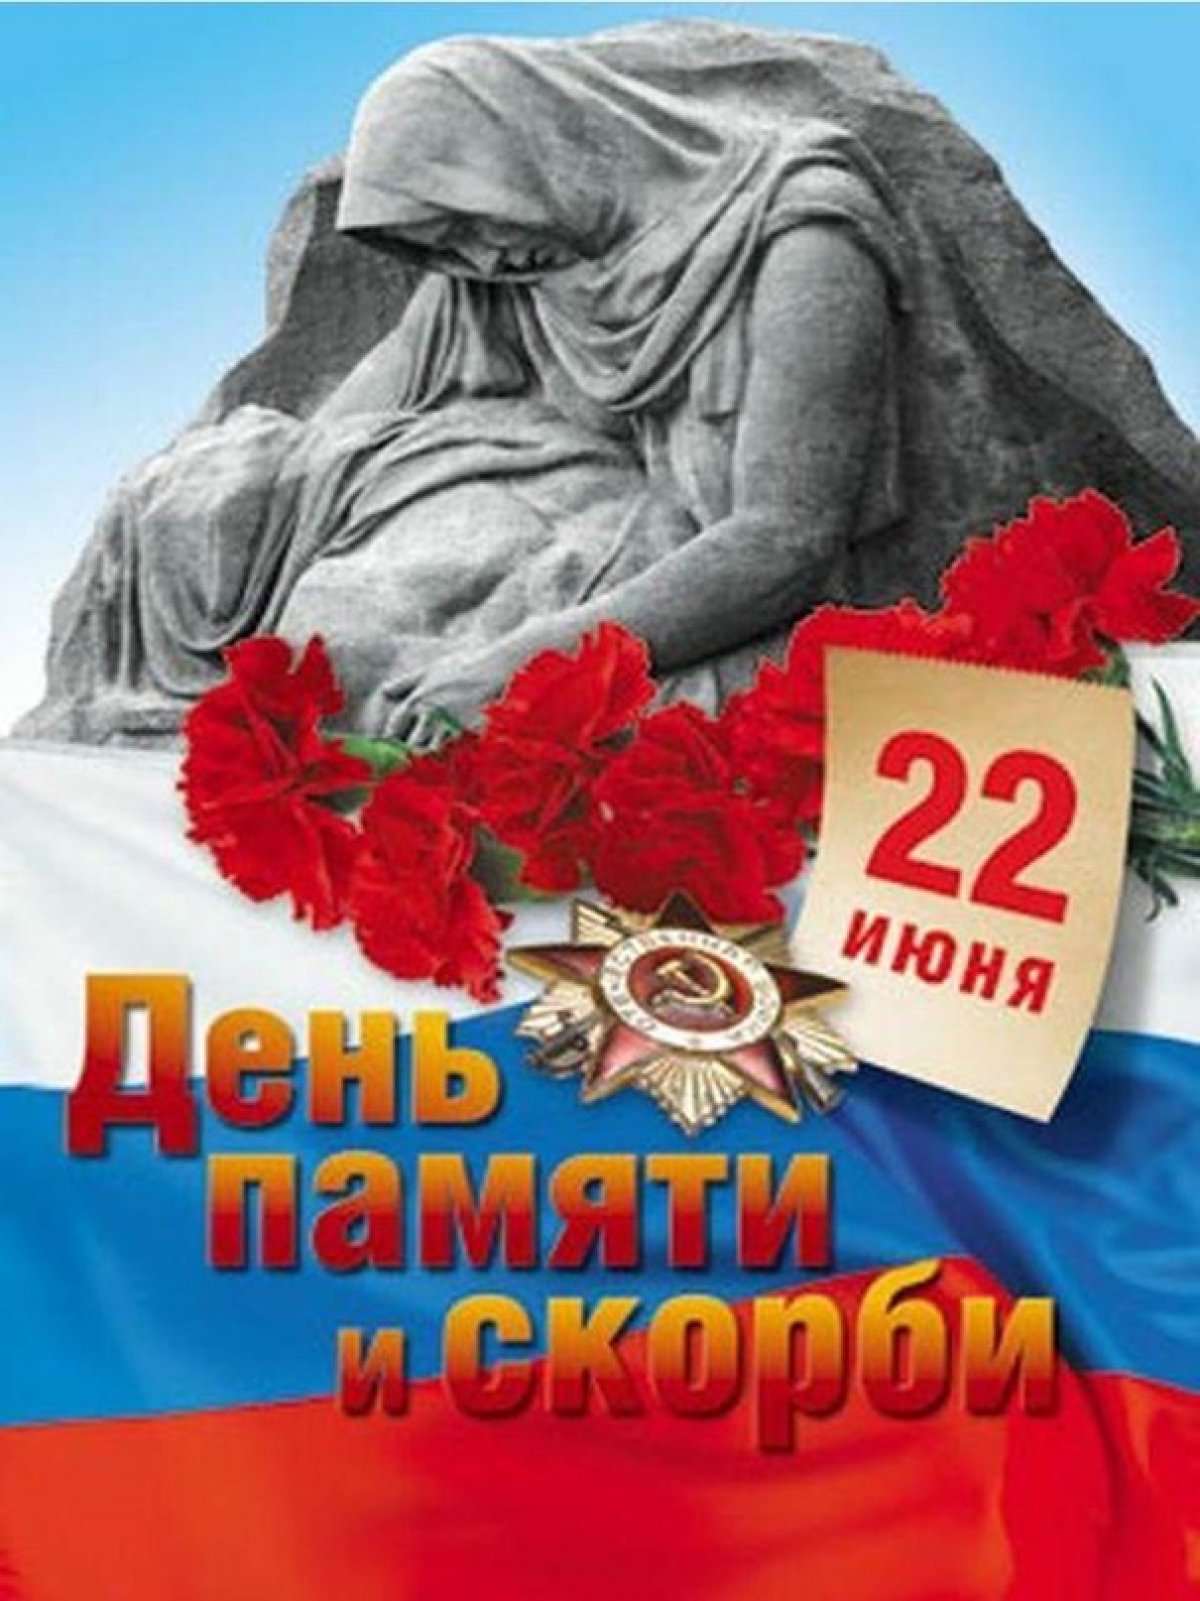 День памяти и скорби 22 июня 2020 года – это 79-я годовщина начала Великой Отечественной войны. Именно в этот день летом 1941 года началась самая кровопролитная и страшная война в истории нашей страны